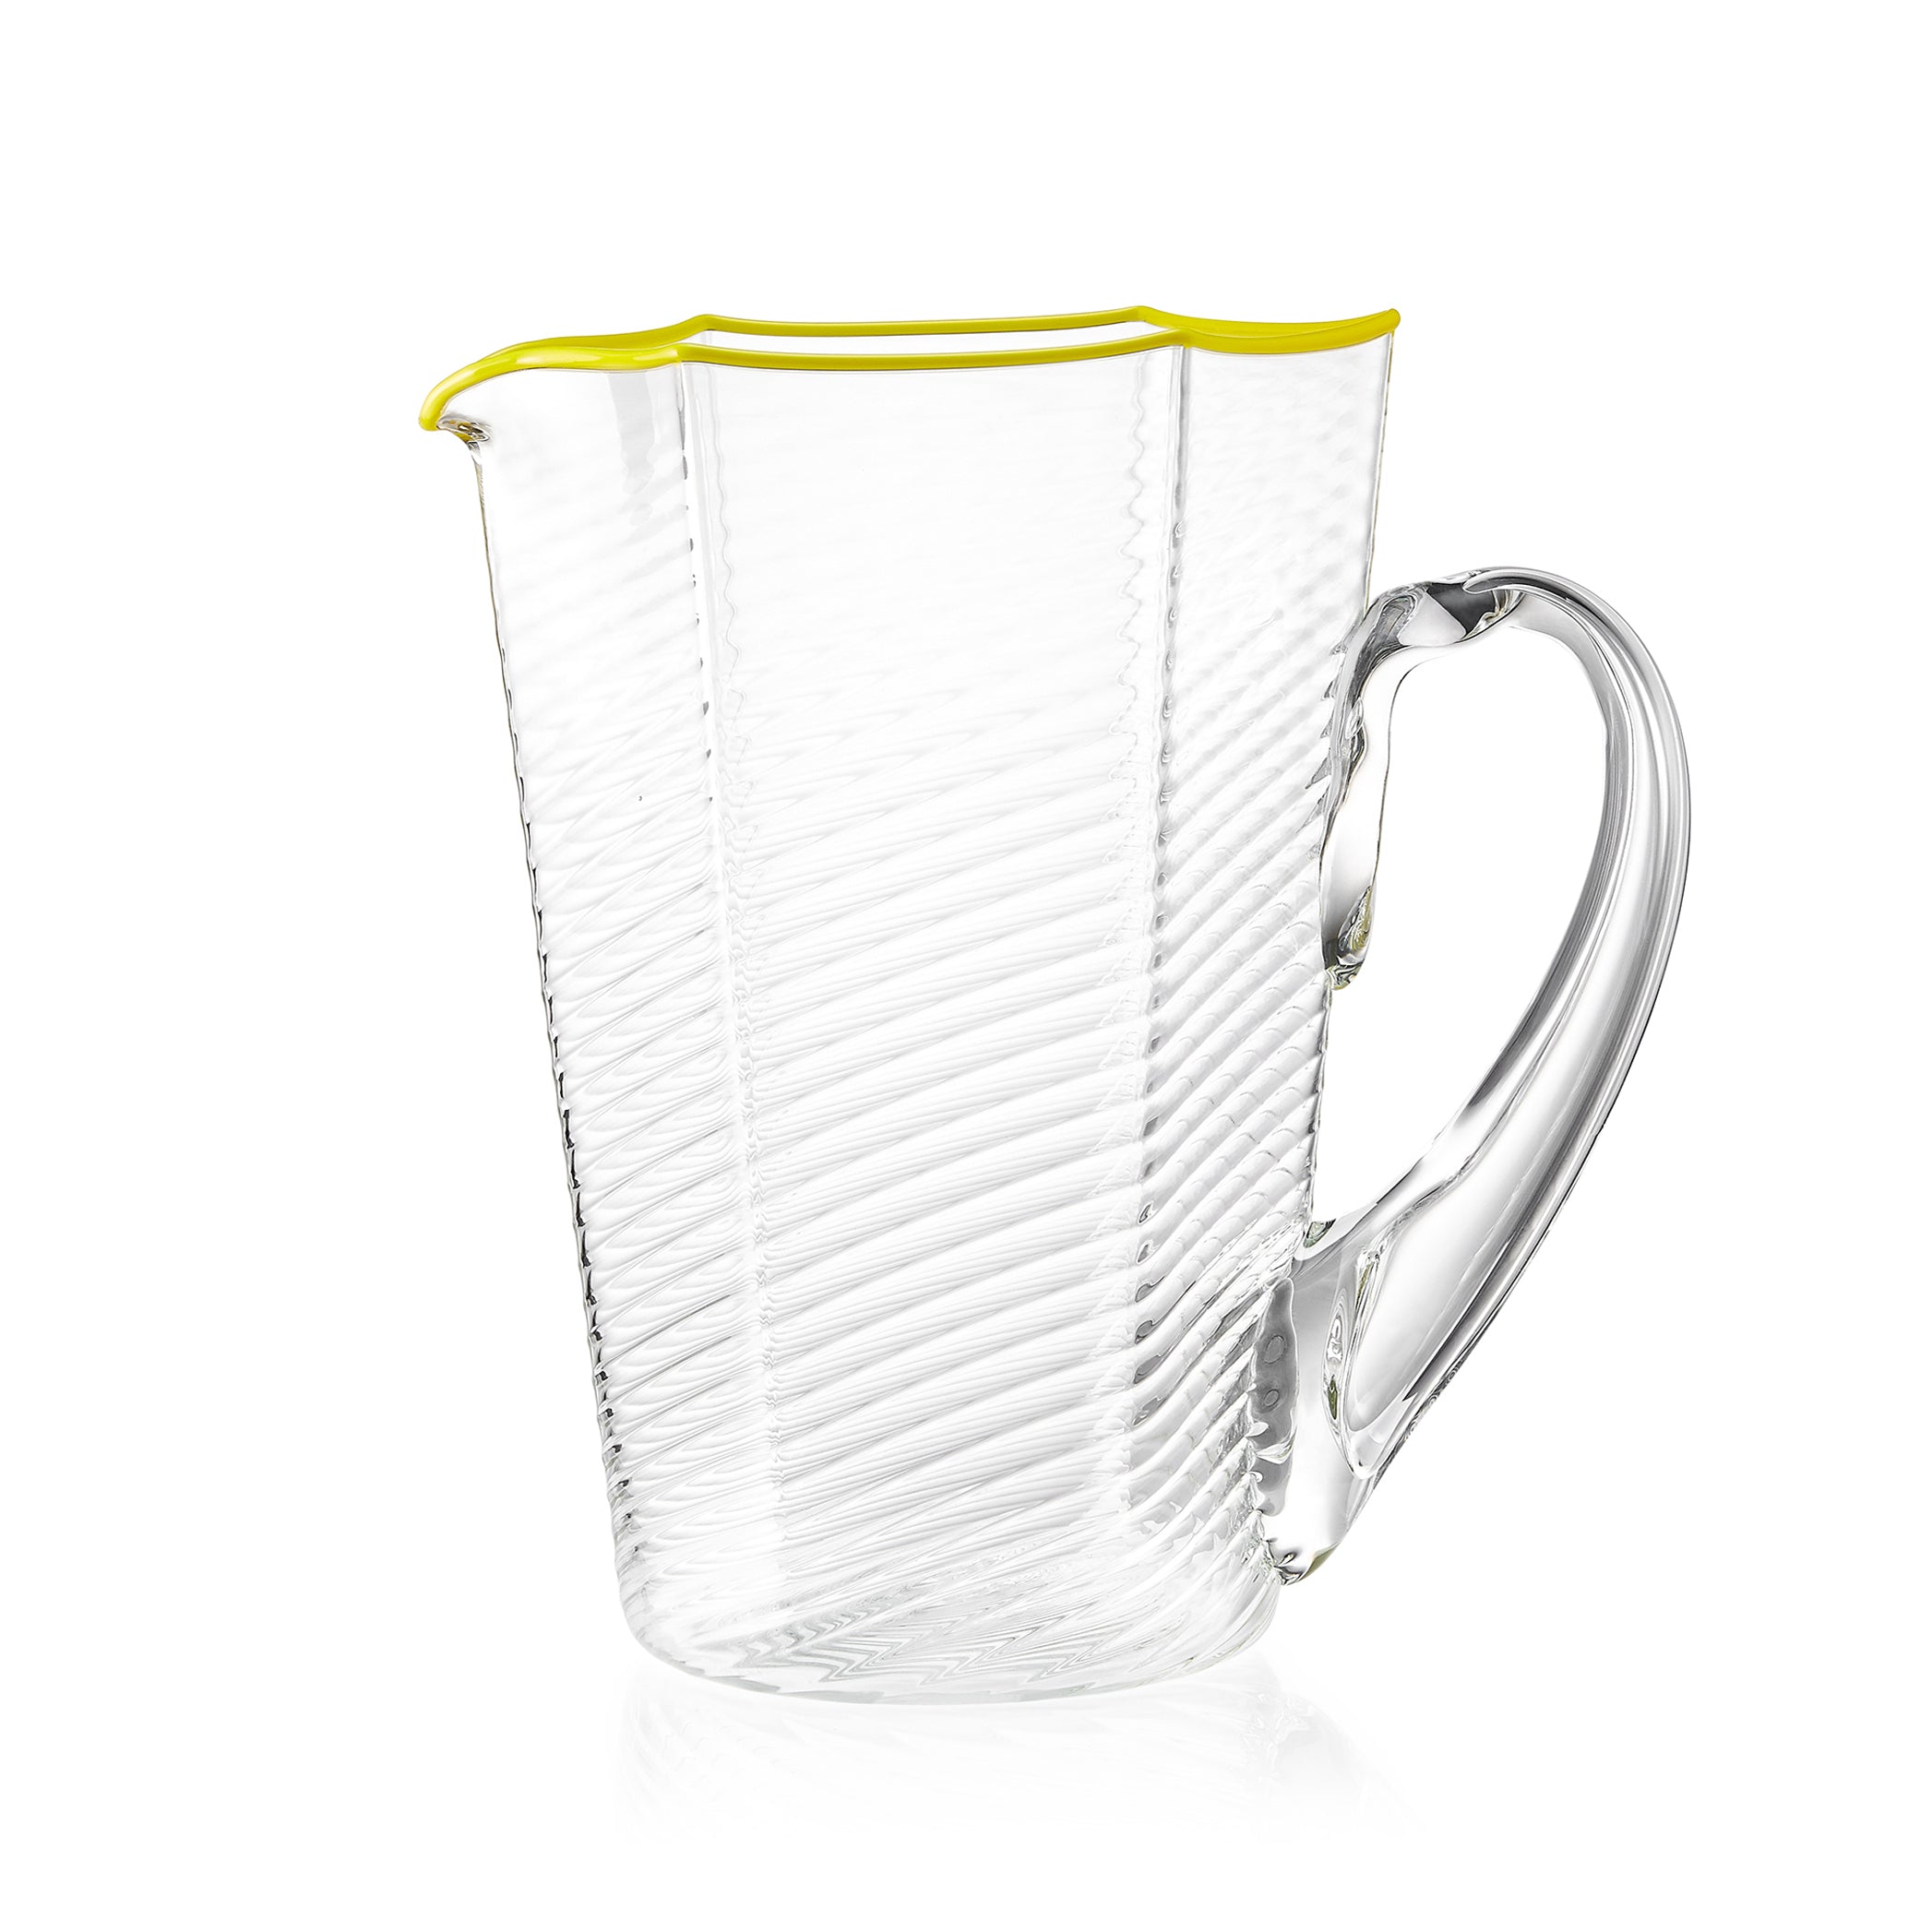 Handblown Hexagonal Ridged Glass Water Jug with Yellow Rim